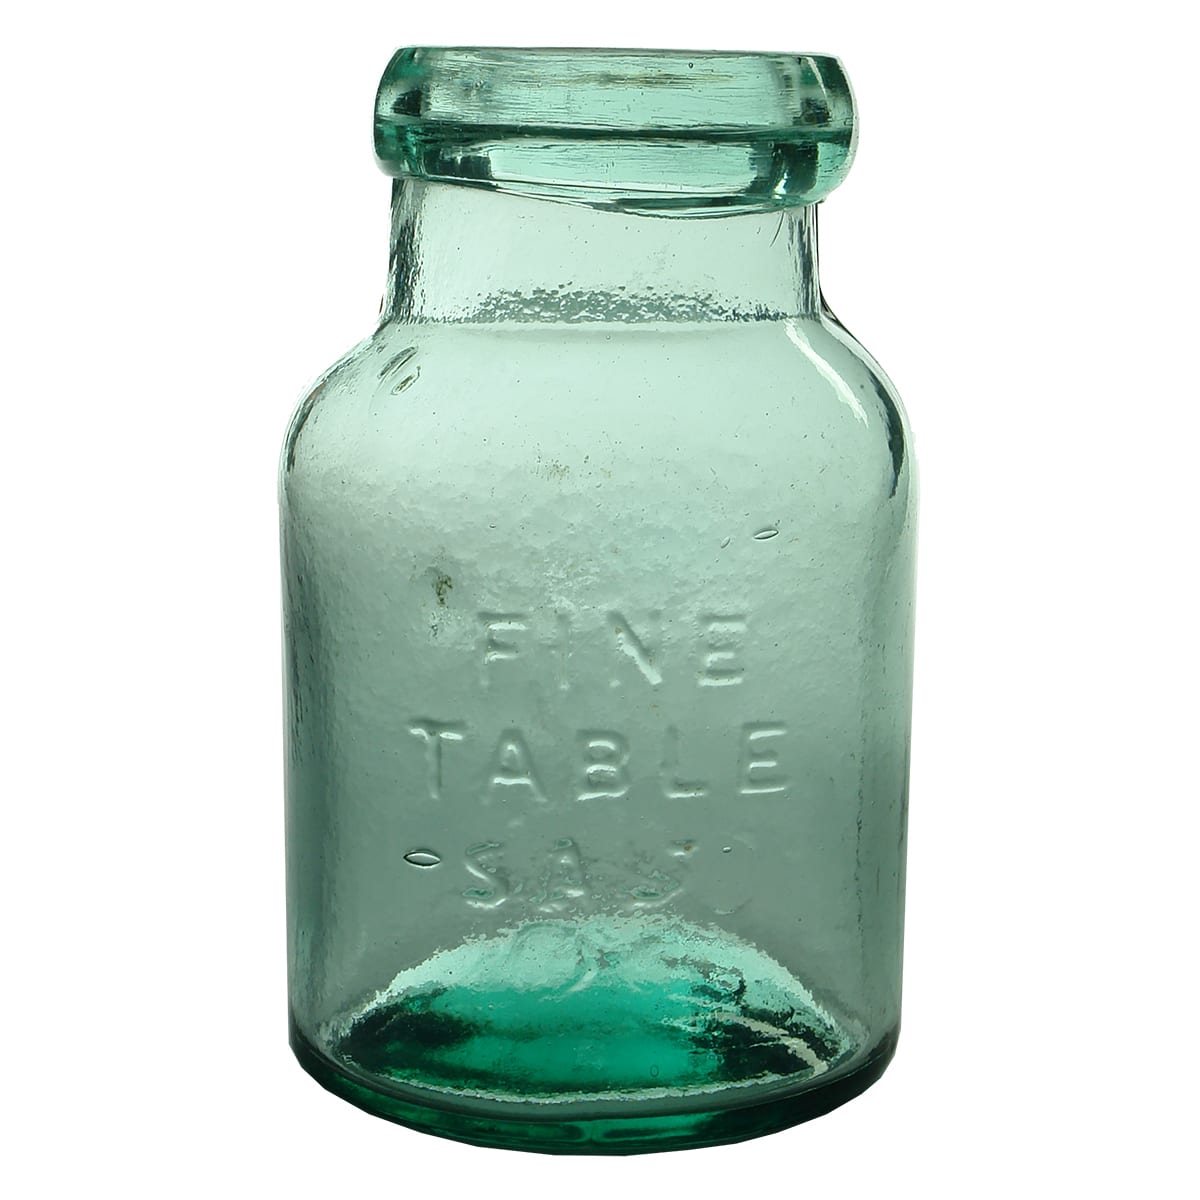 Salt Jar. Fine Table Salt. FBH base mark. Large lip with inner ledge for stopper. (South Australia)